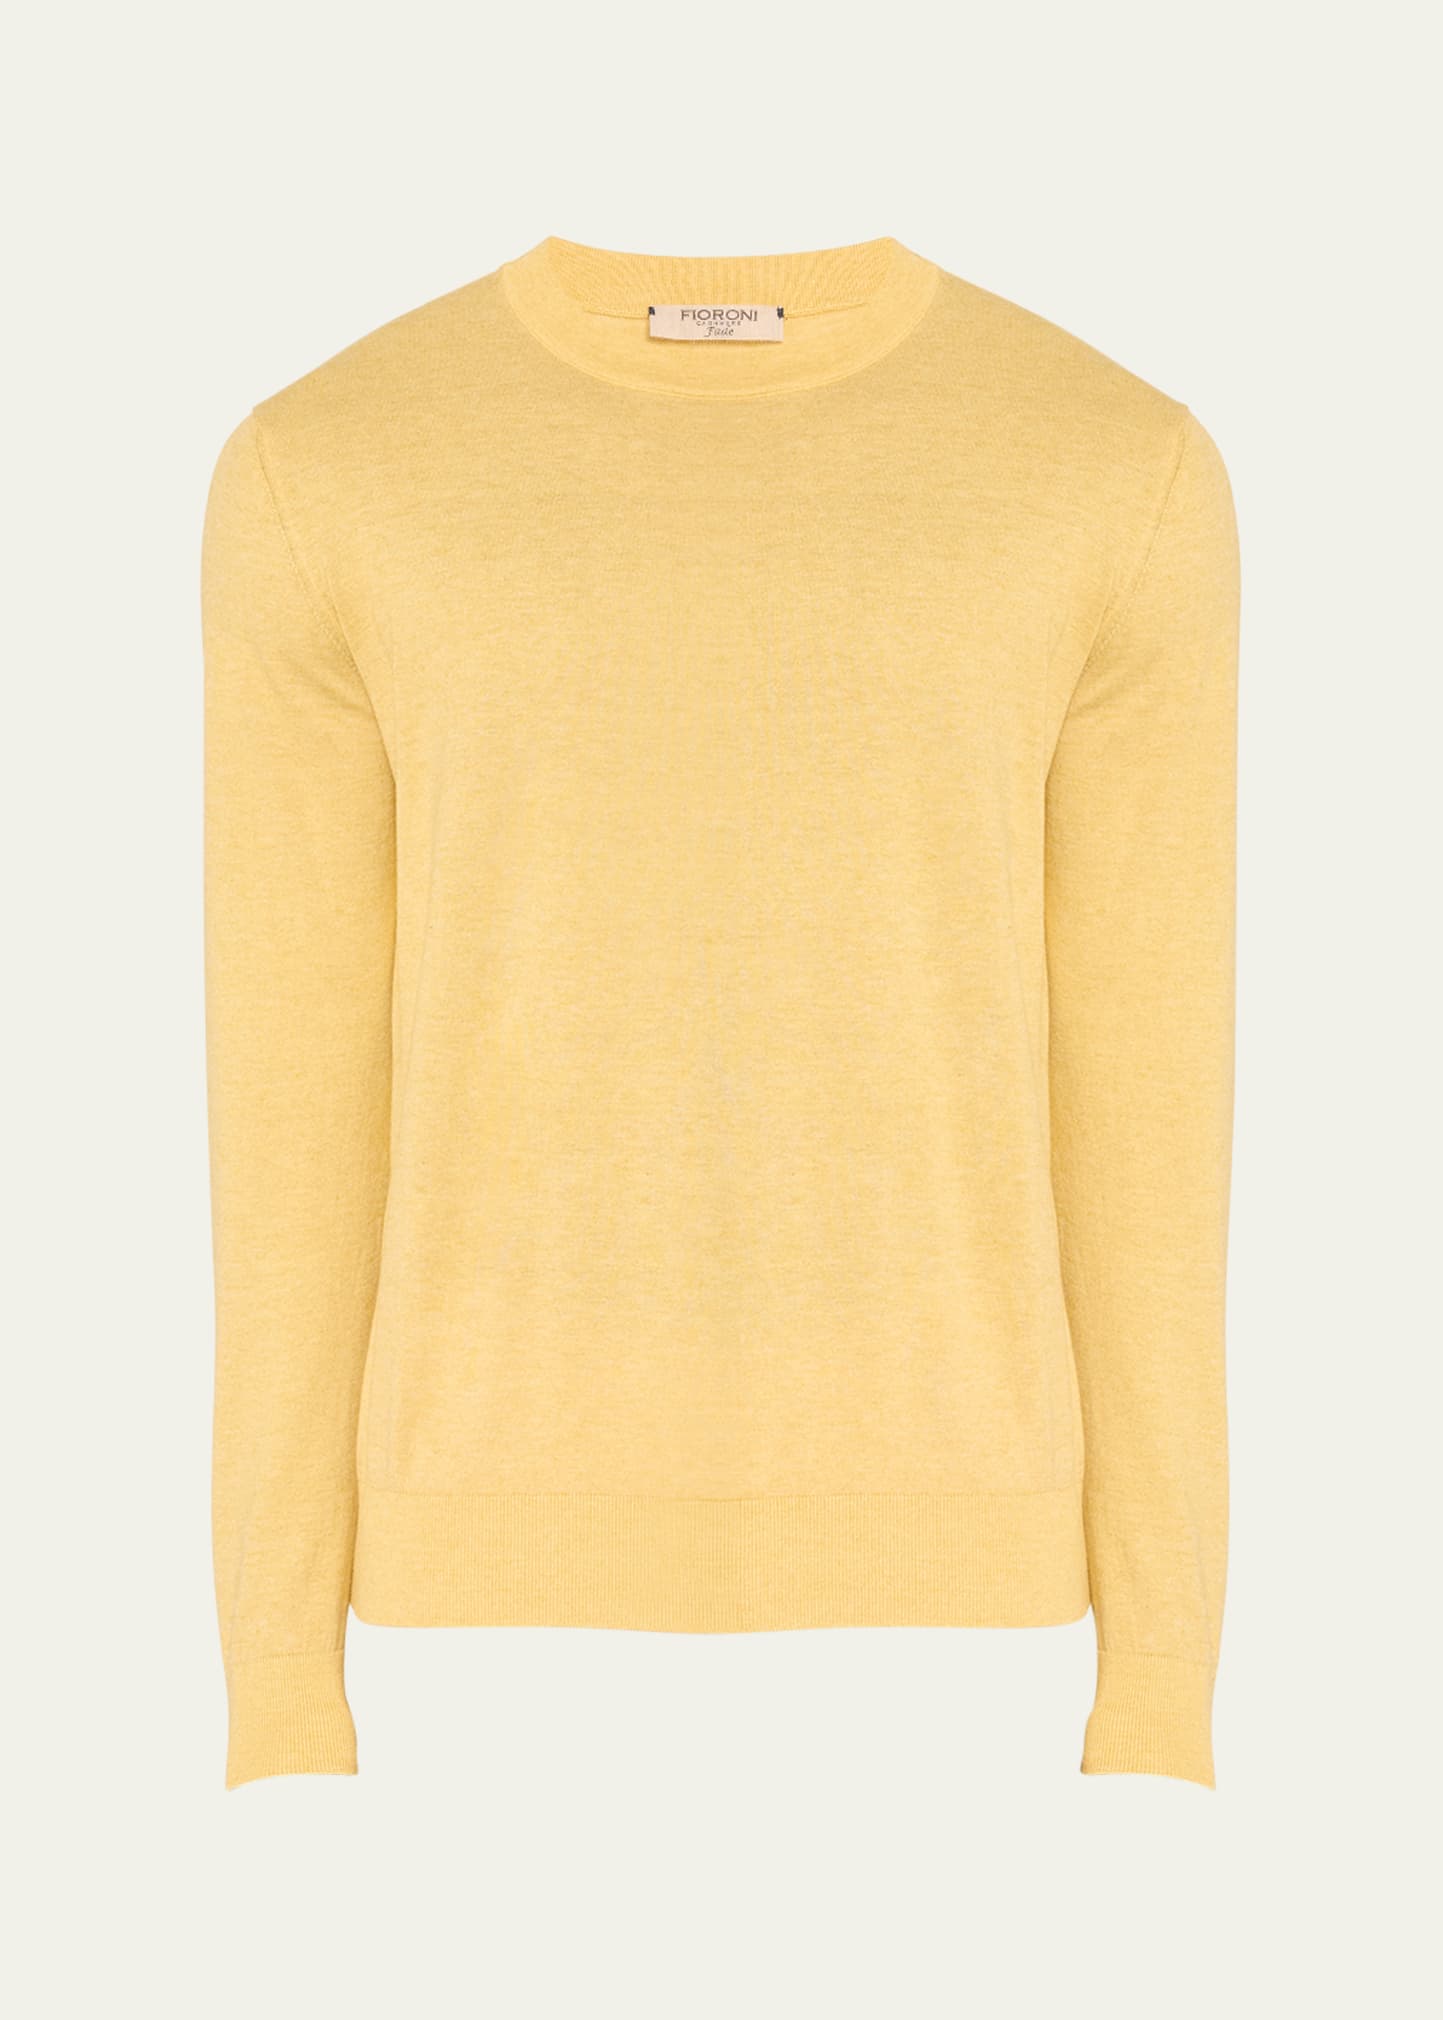 Men's Cashmere Cotton Crewneck Sweater